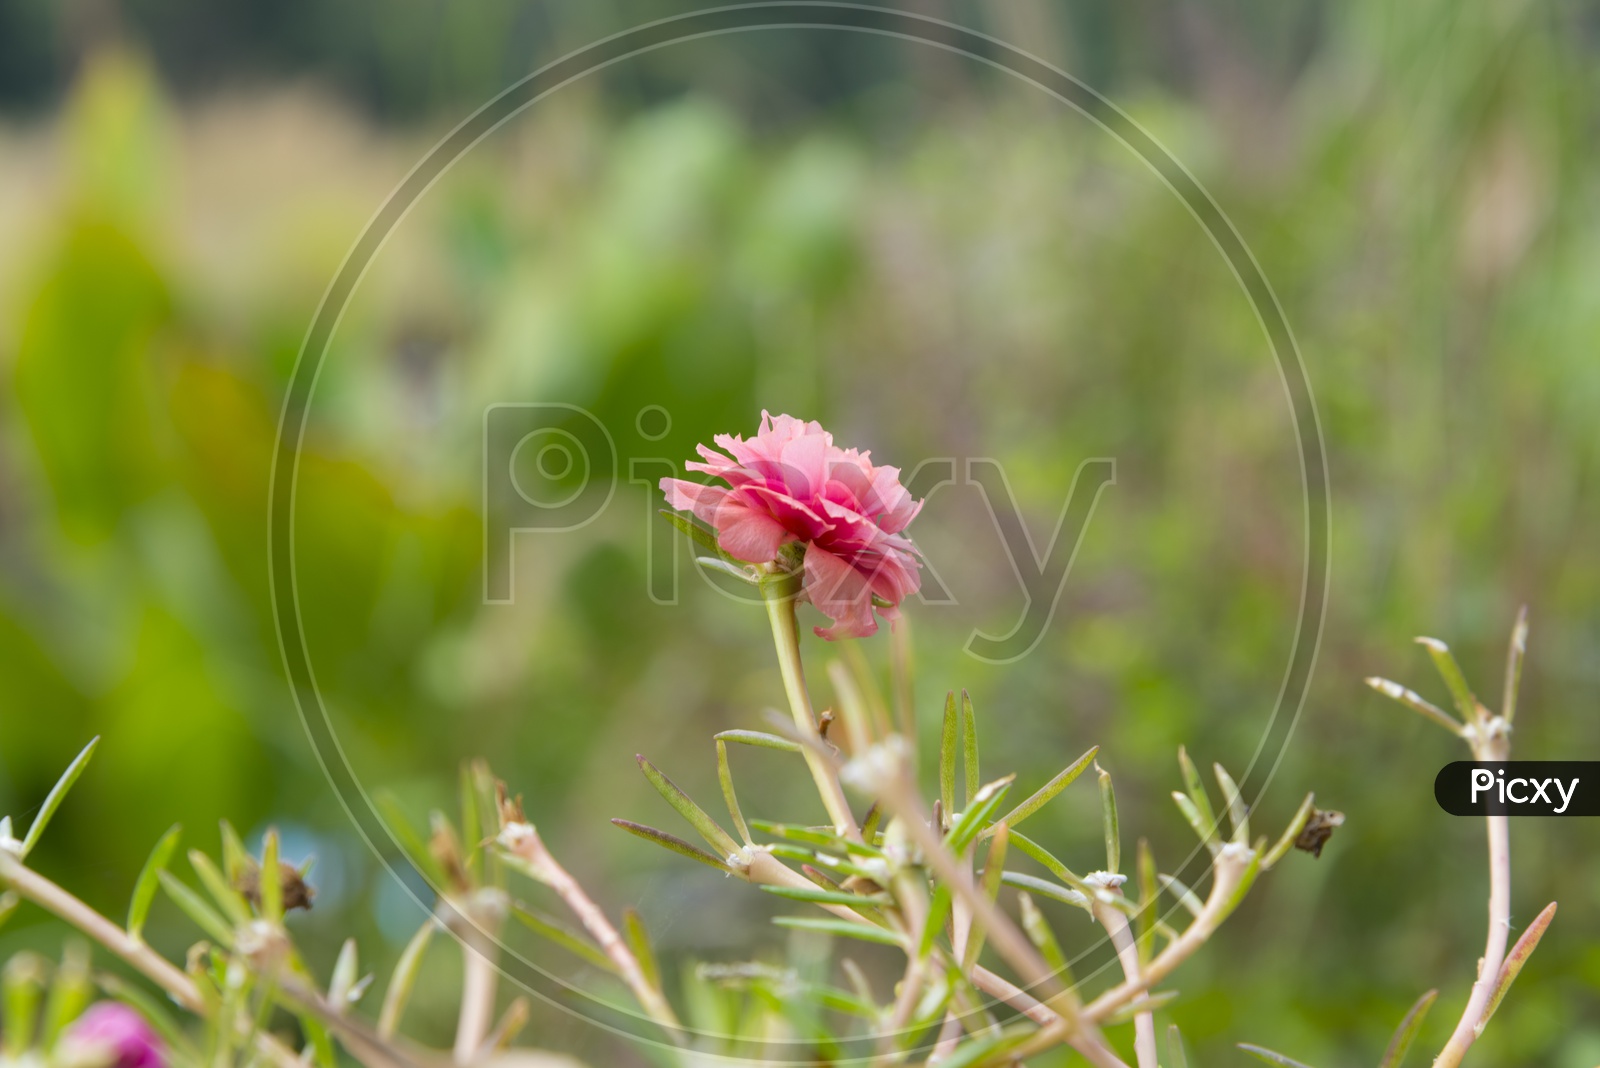 Little Rose Flower Plant In a Garden  Closeup